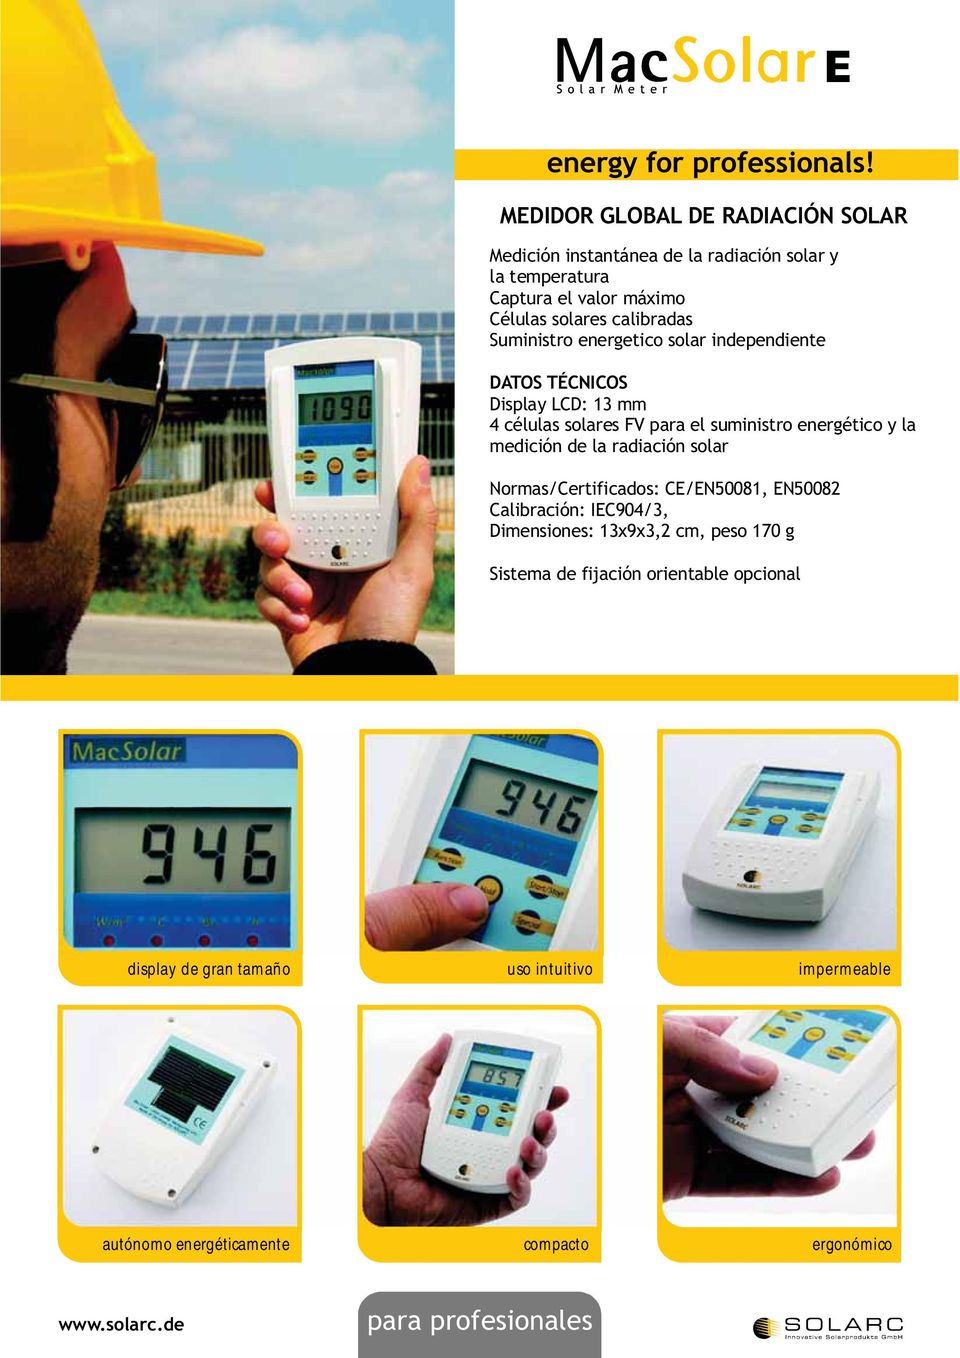 Suministro energetico solar independiente Display LCD: 13 mm 4 células solares FV para el suministro energético y la medición de la radiación